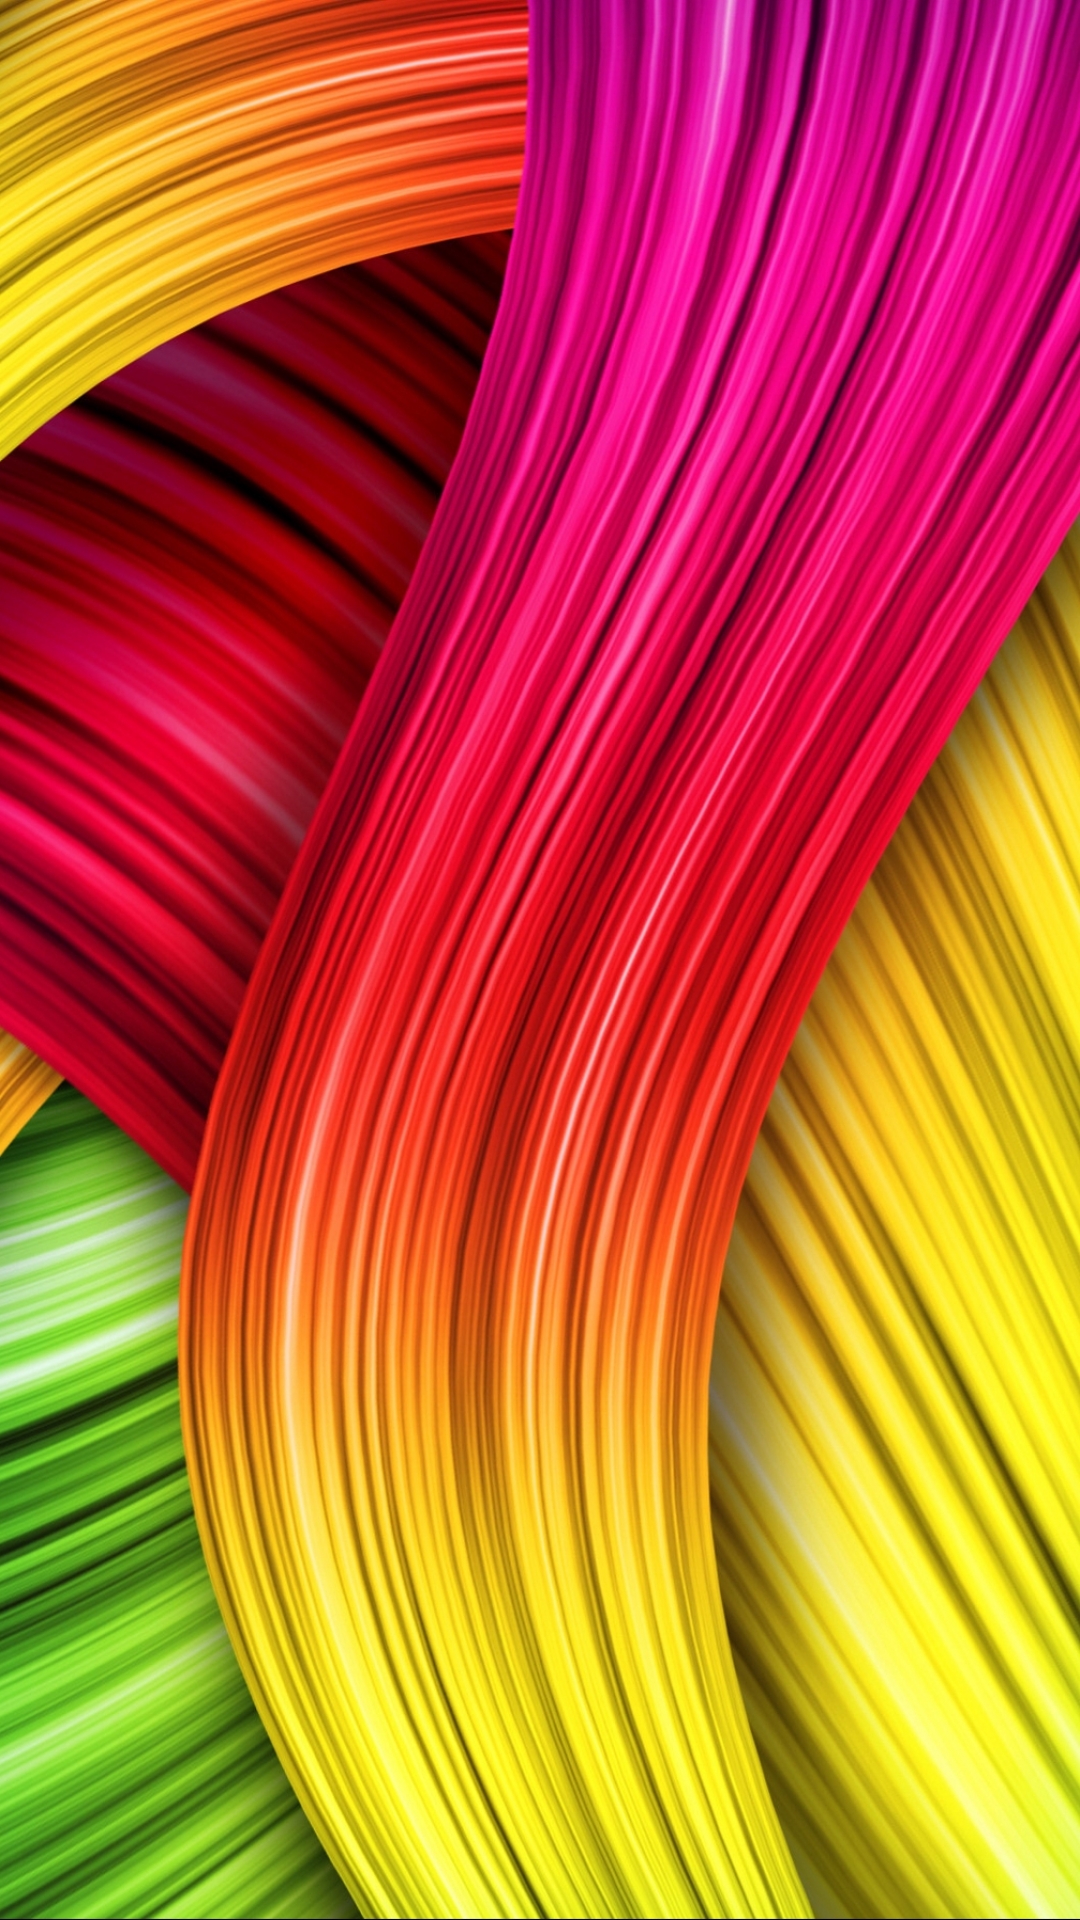 모바일 최신 최신 배경 화면,초록,빨간,노랑,주황색,분홍